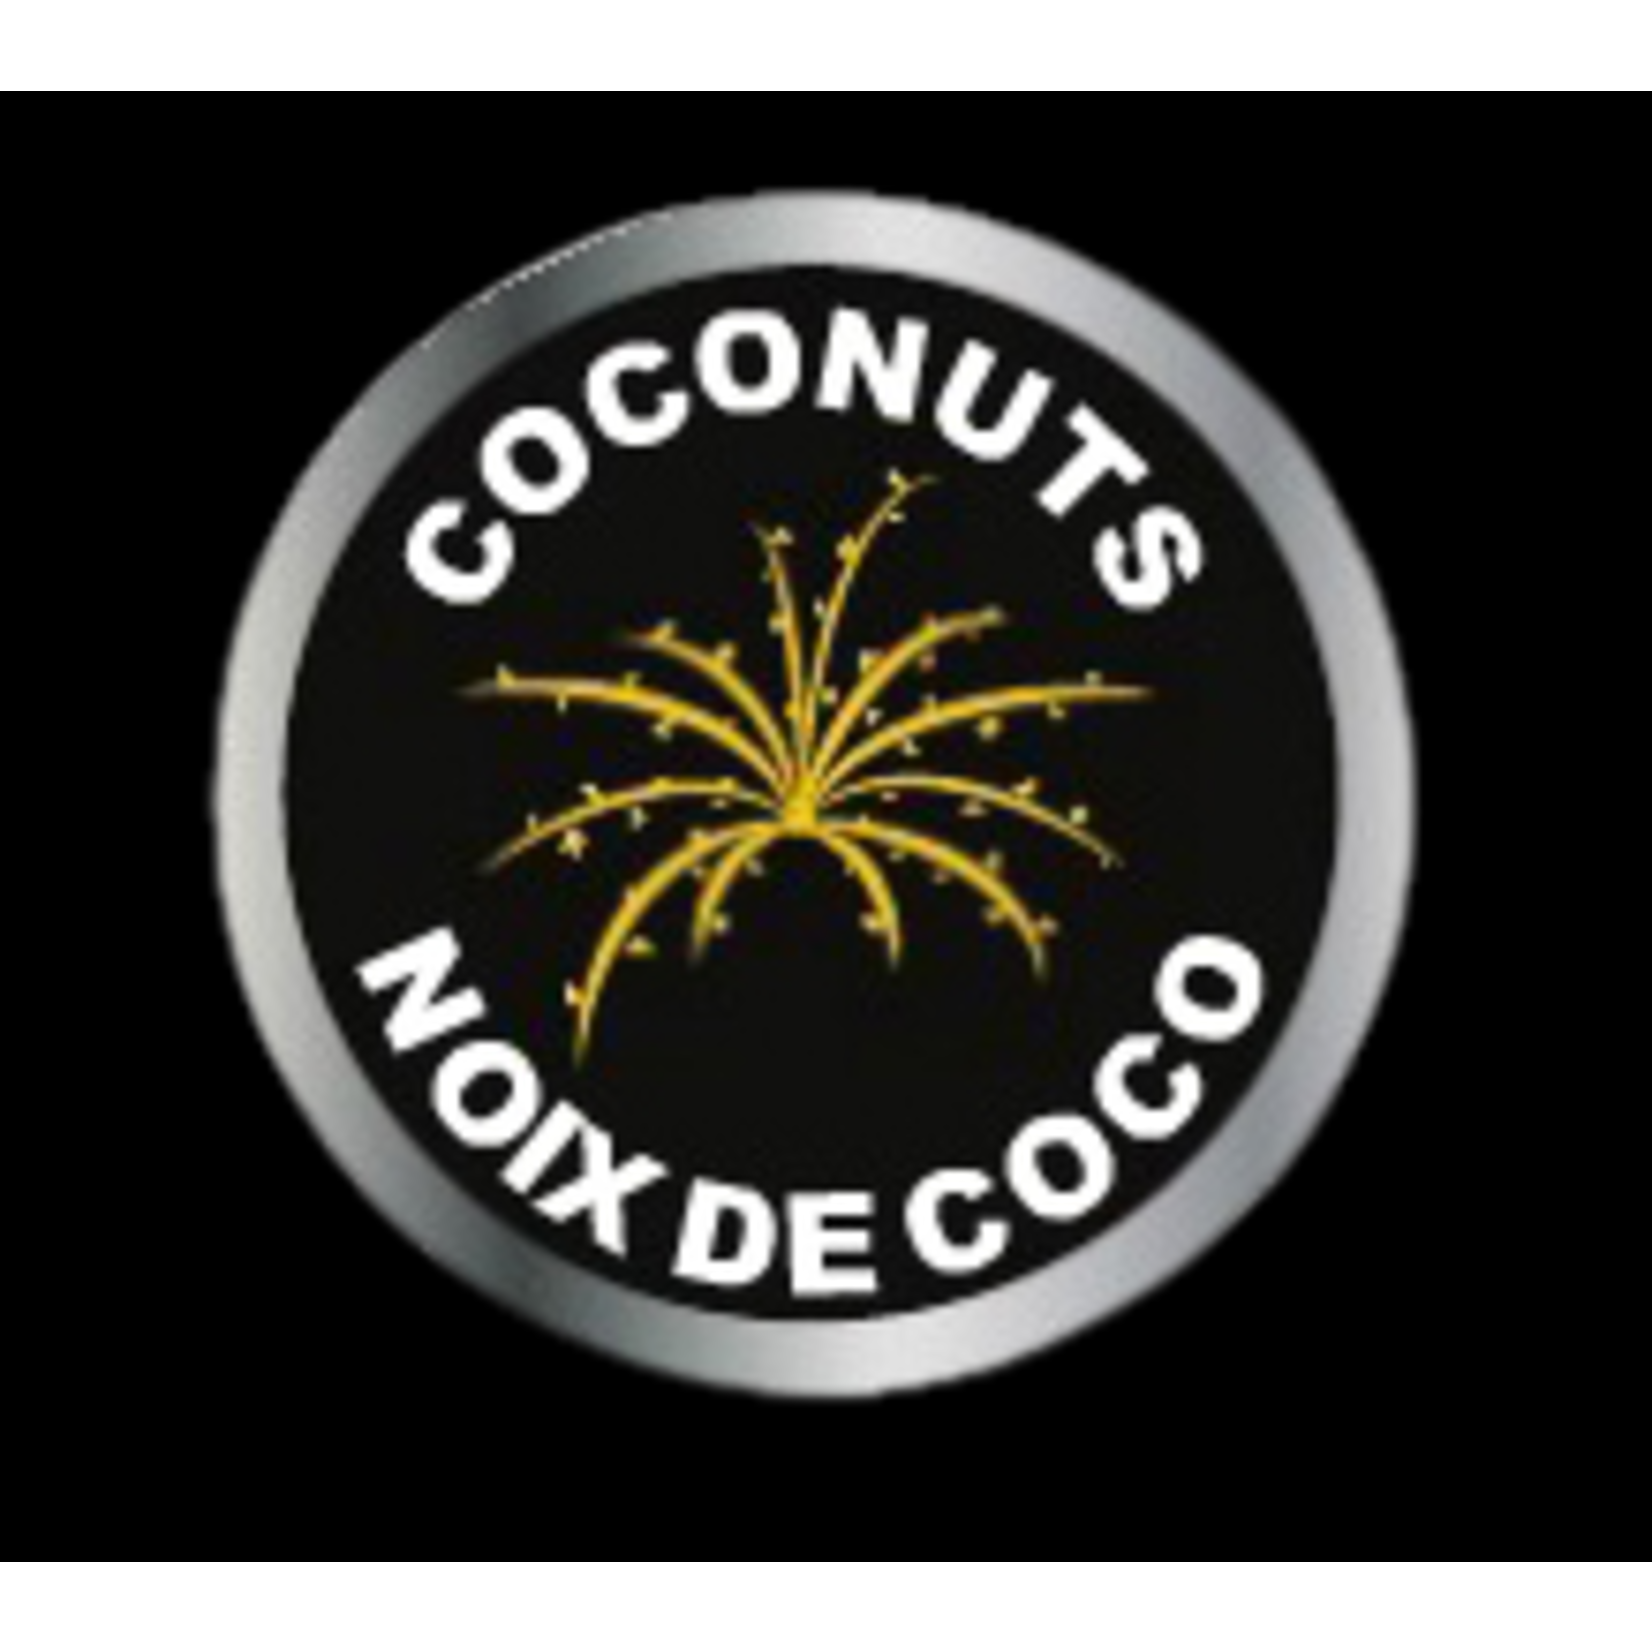 Strobing Coconut